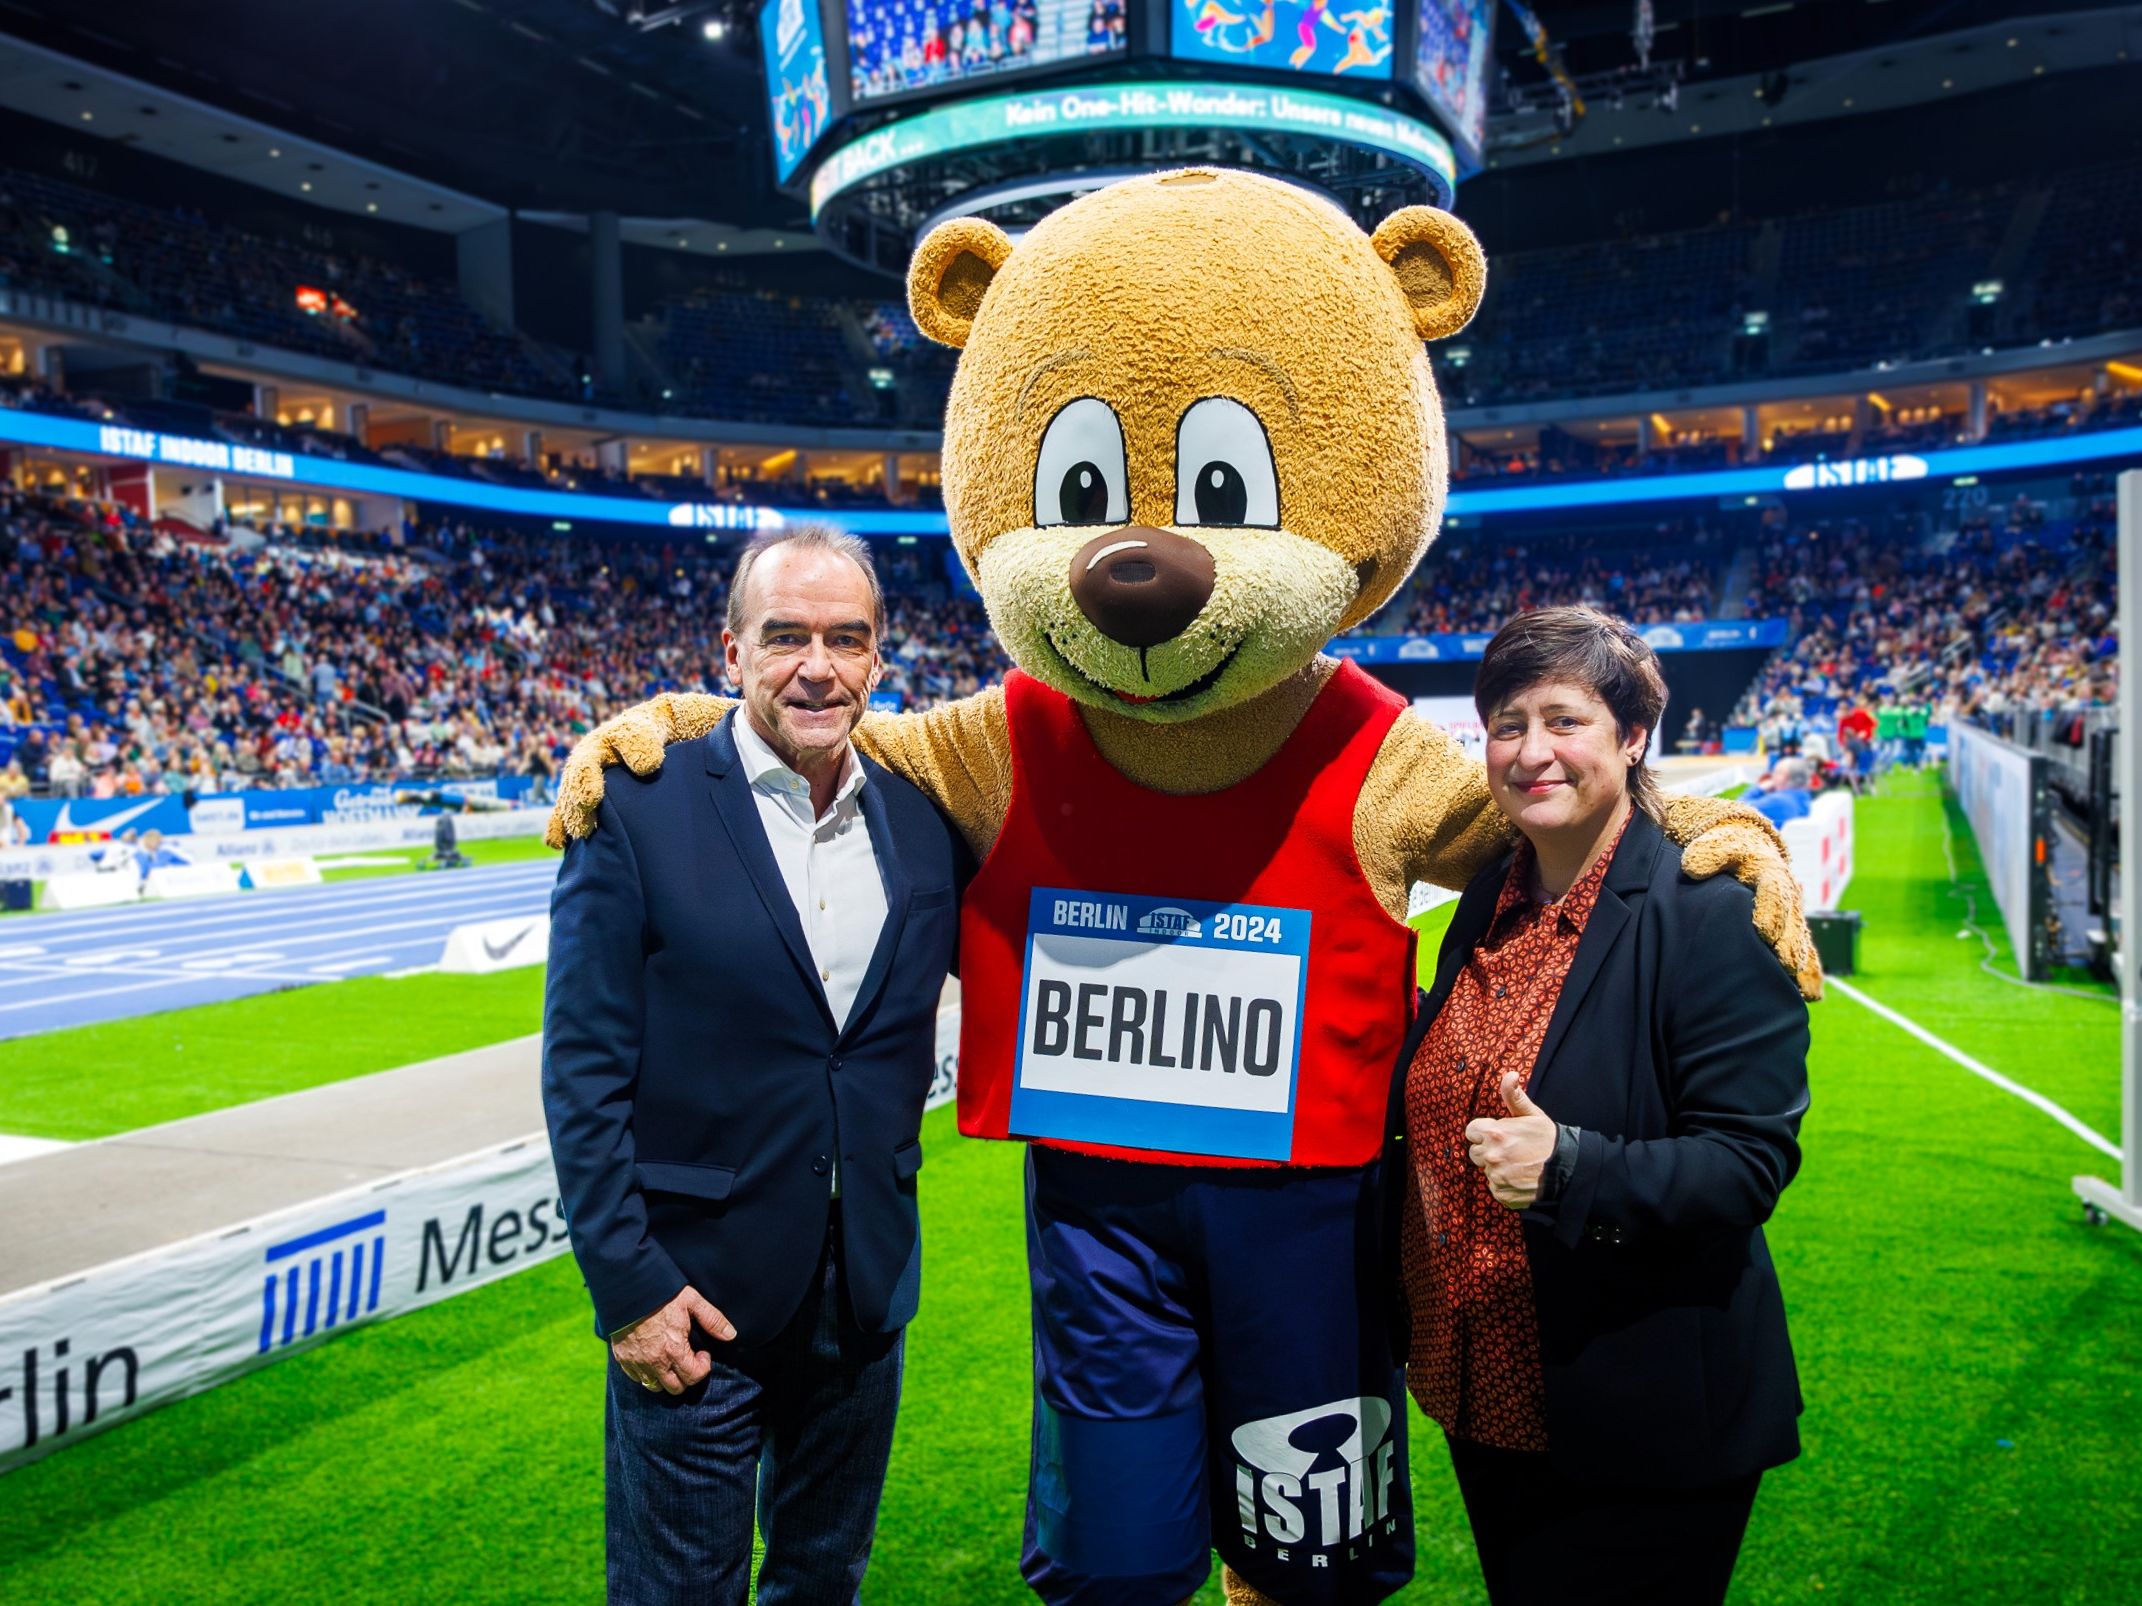 Gerhard Wilhelm, Sprecher der Geschäftsführung der Spielbank Berlin, unterstützte die Athleten zusammen mit Berlino, dem ISTAF Maskottchen, und Franziska Becker, der neunen Staatssekretärin für Sport 